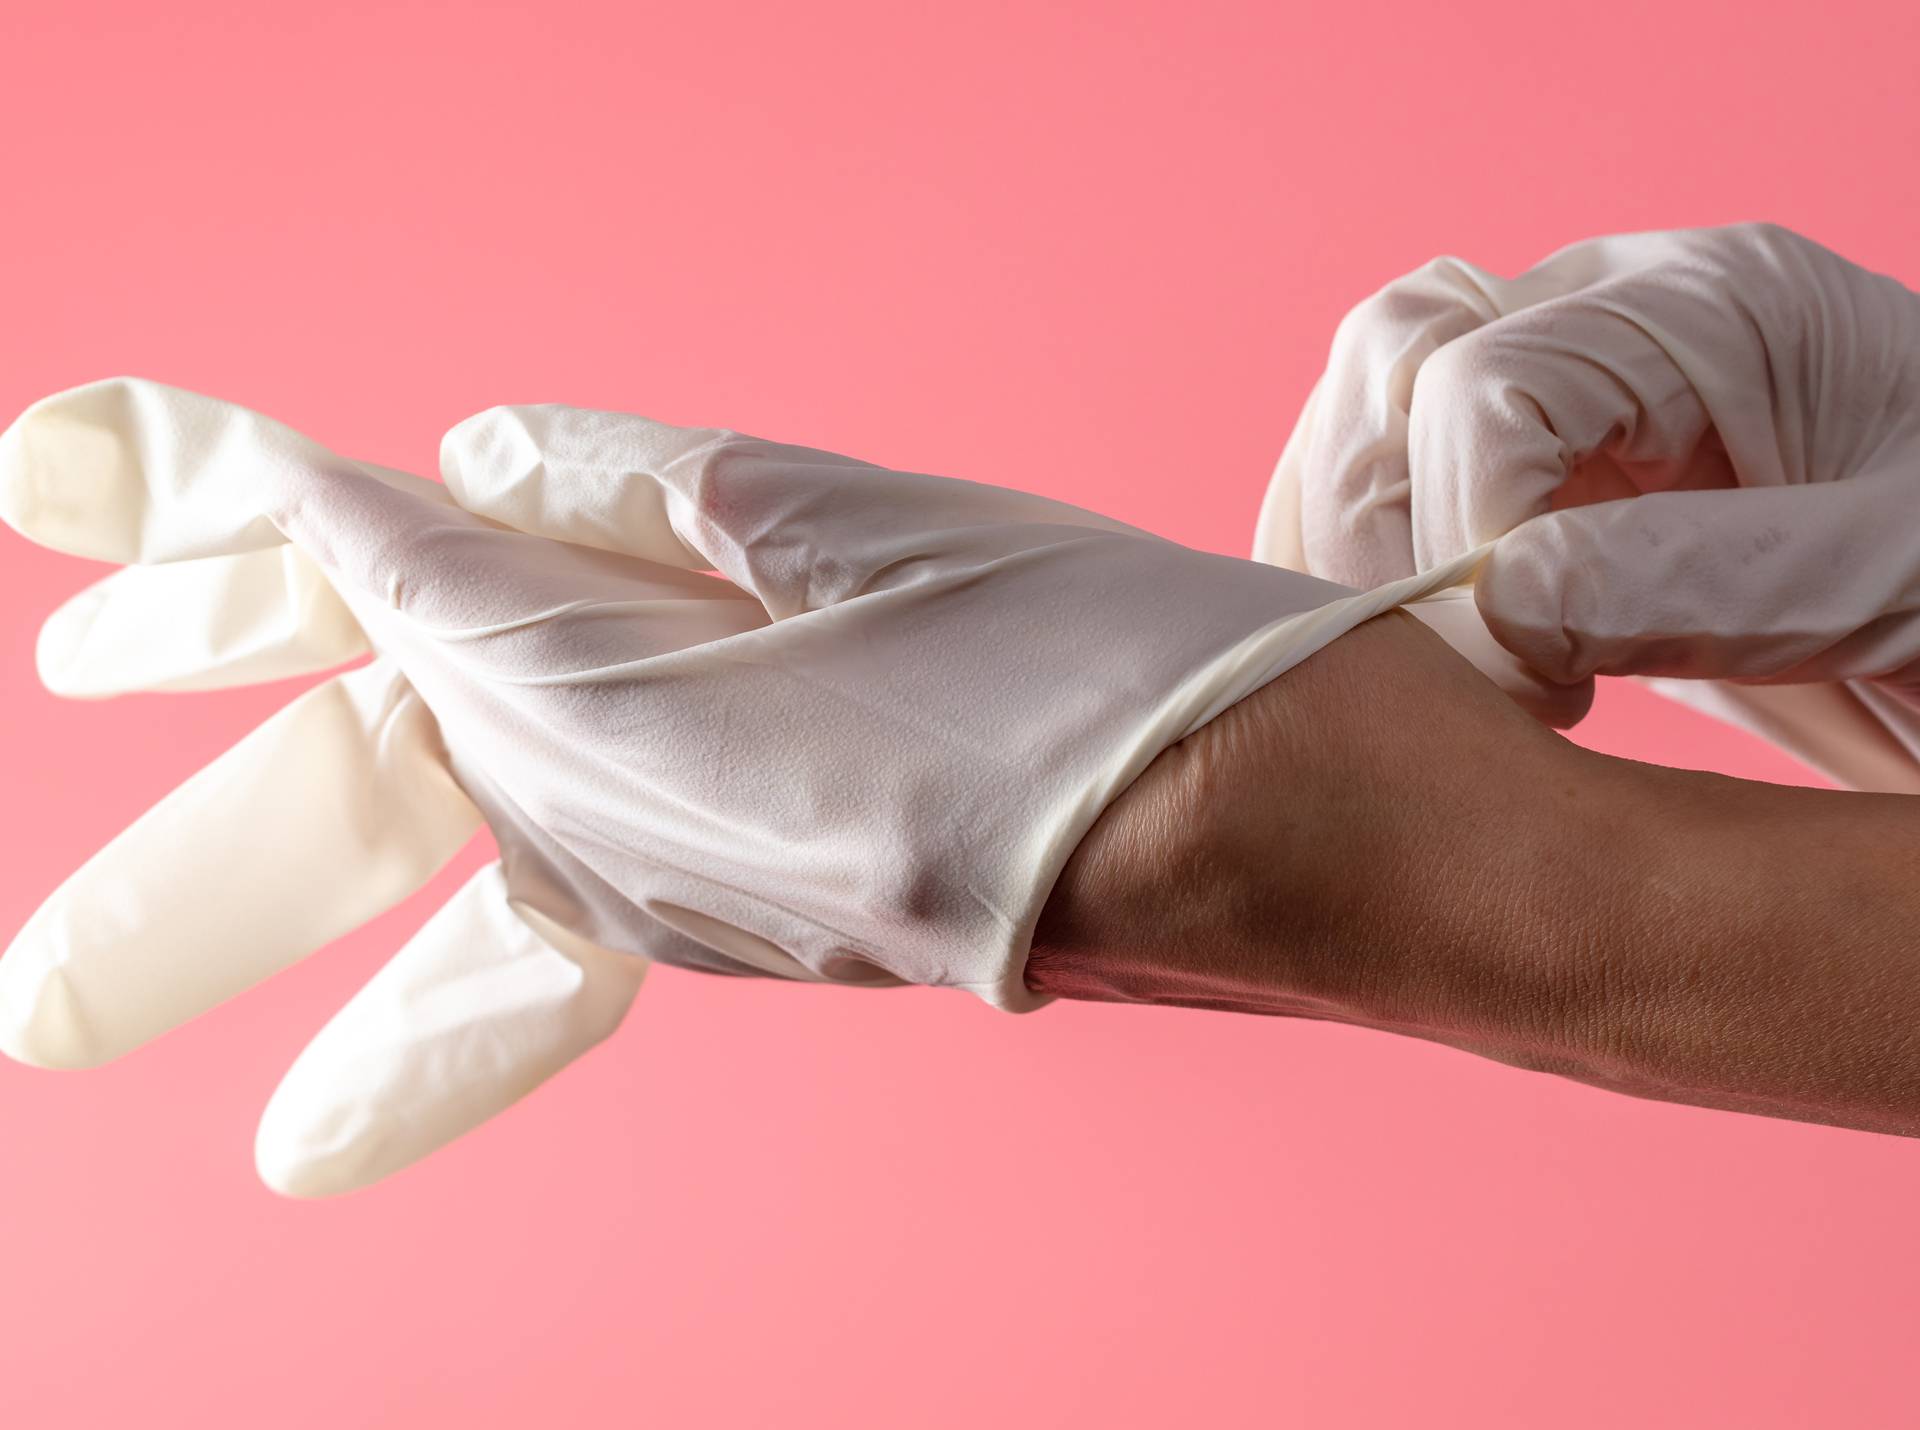 U borbi protiv zaraze koristite rukavice? Ipak nisu bezopasne